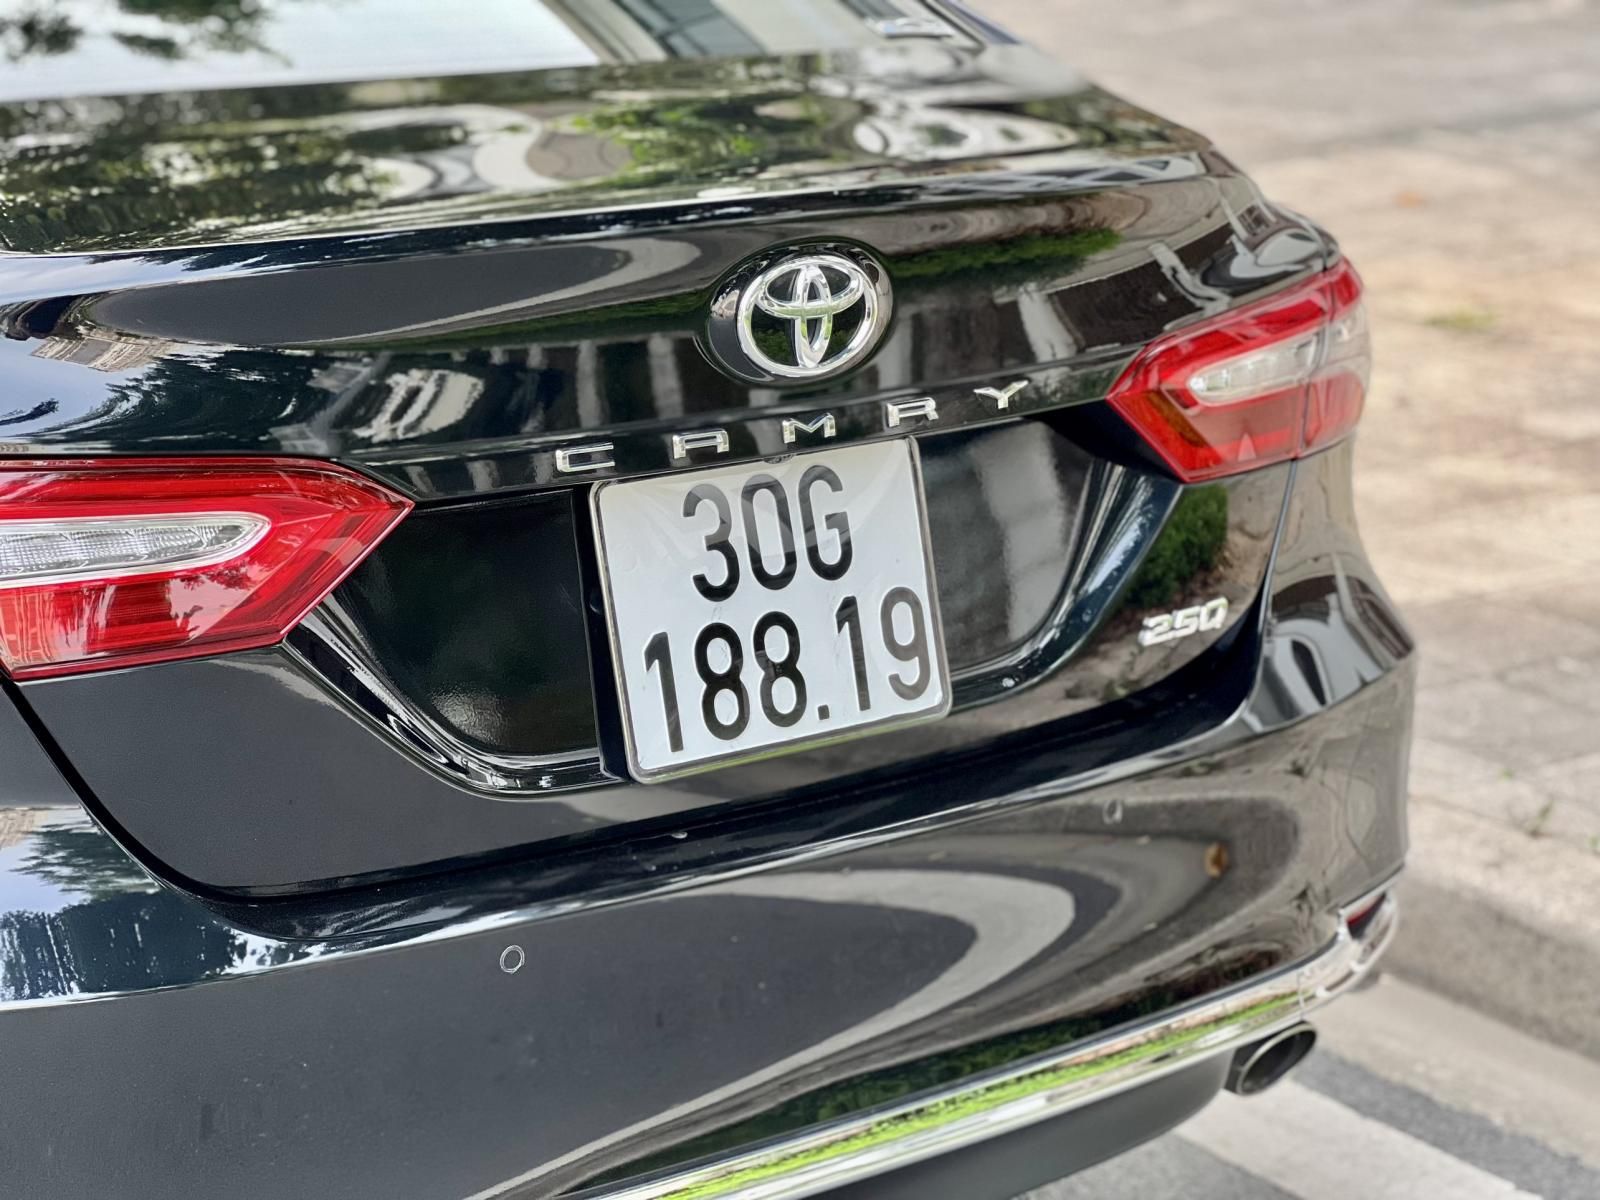 Toyota Camry 2019 - Như mới full option chạy chuẩn 1,9v km